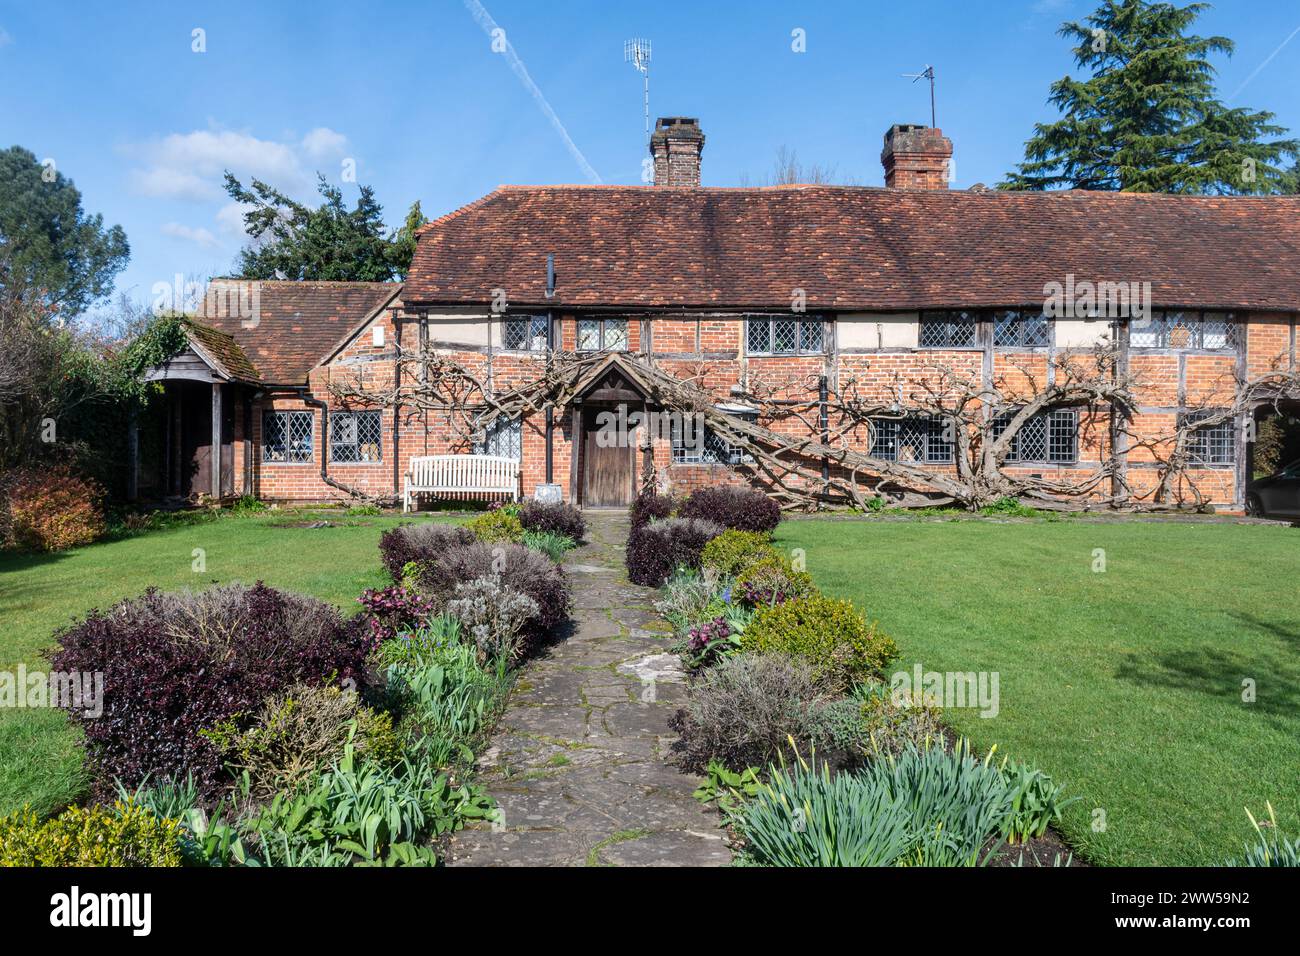 Joli cottage de caractère à Cranleigh, un village du Surrey, Angleterre, Royaume-Uni, un bâtiment classé grade II du 17ème siècle Banque D'Images